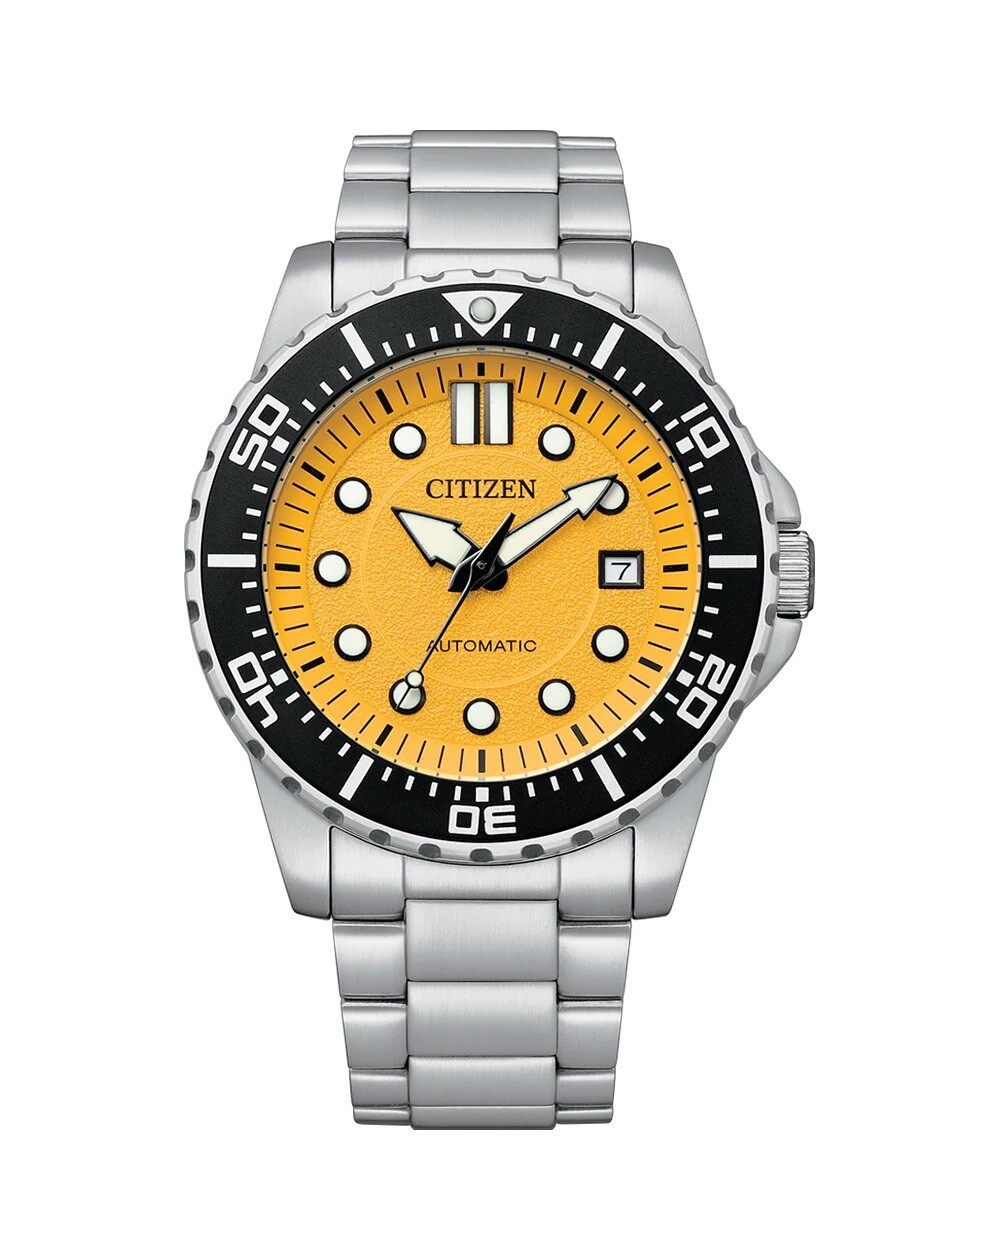 Citizen NJ0170-83Z 43mm 100m WR automatic divers men’s watch stainless steel bracelet